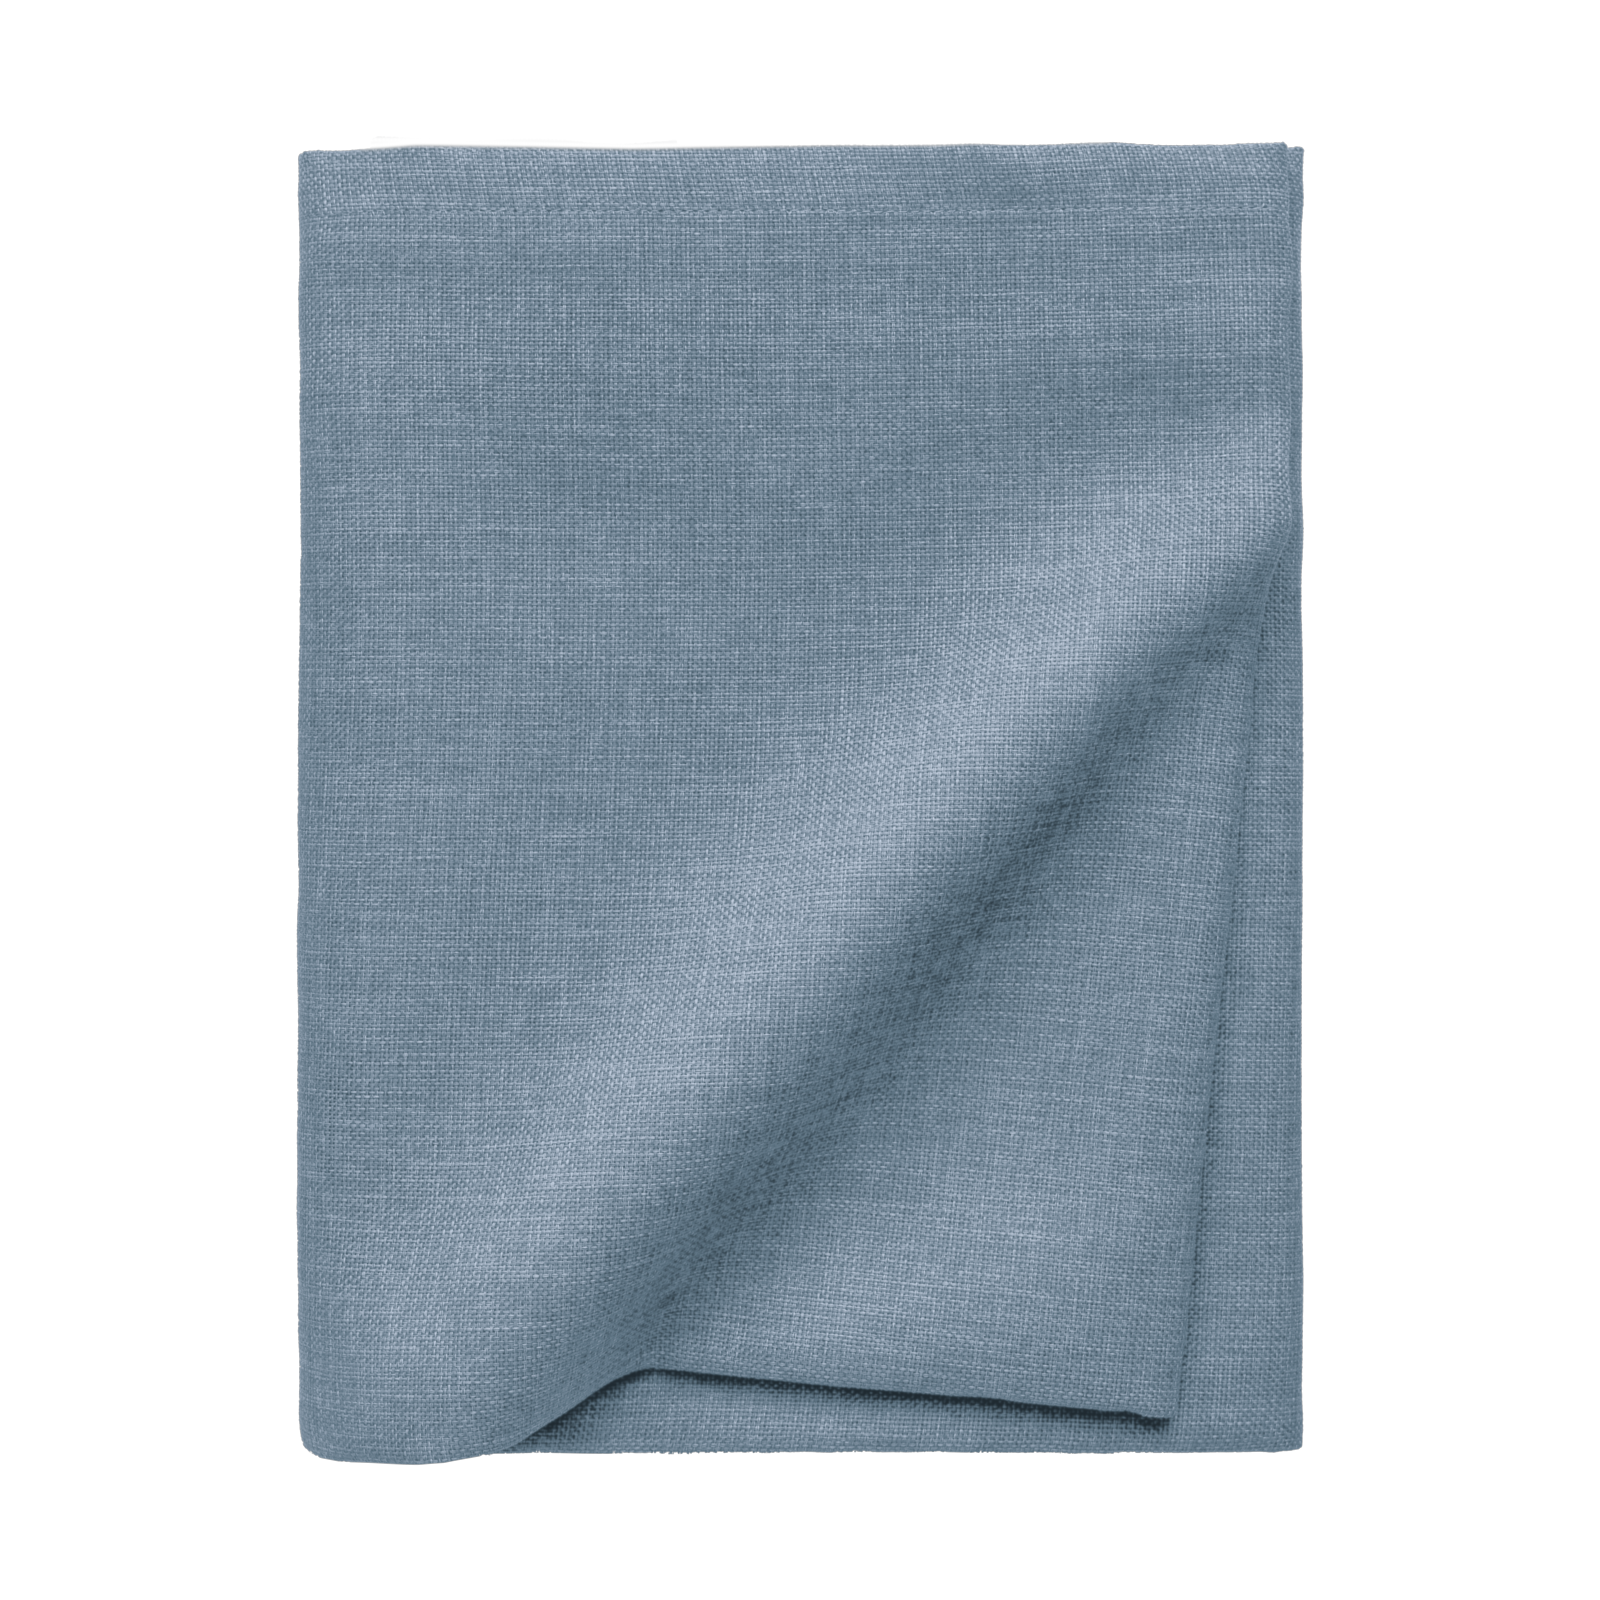 Größe: Ø170 cm Farbe: hellblau #farbe_hellblau